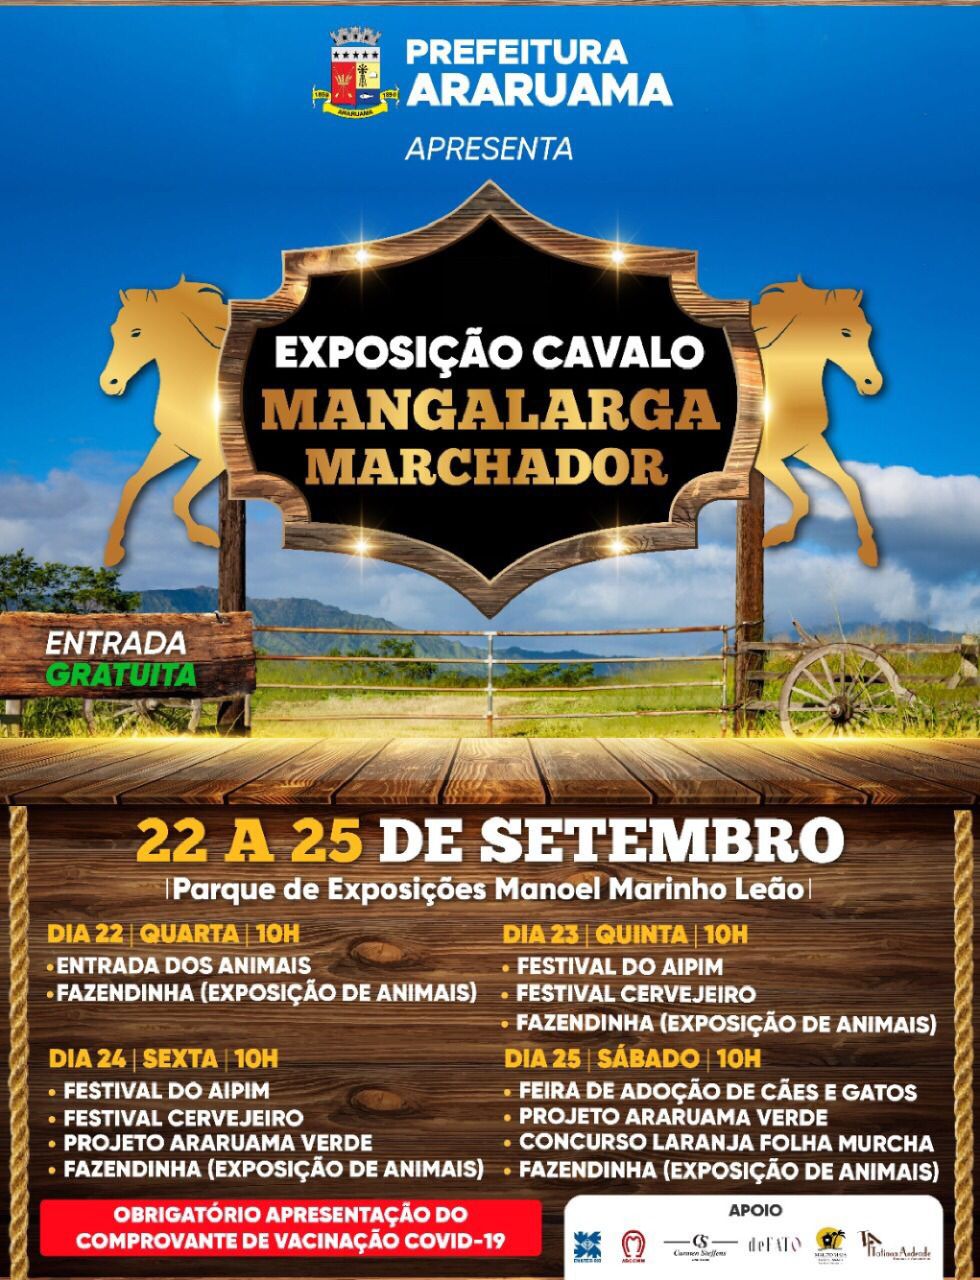 Prefeitura de Araruama vai realizar a Exposição do Cavalo Mangalarga Marchador